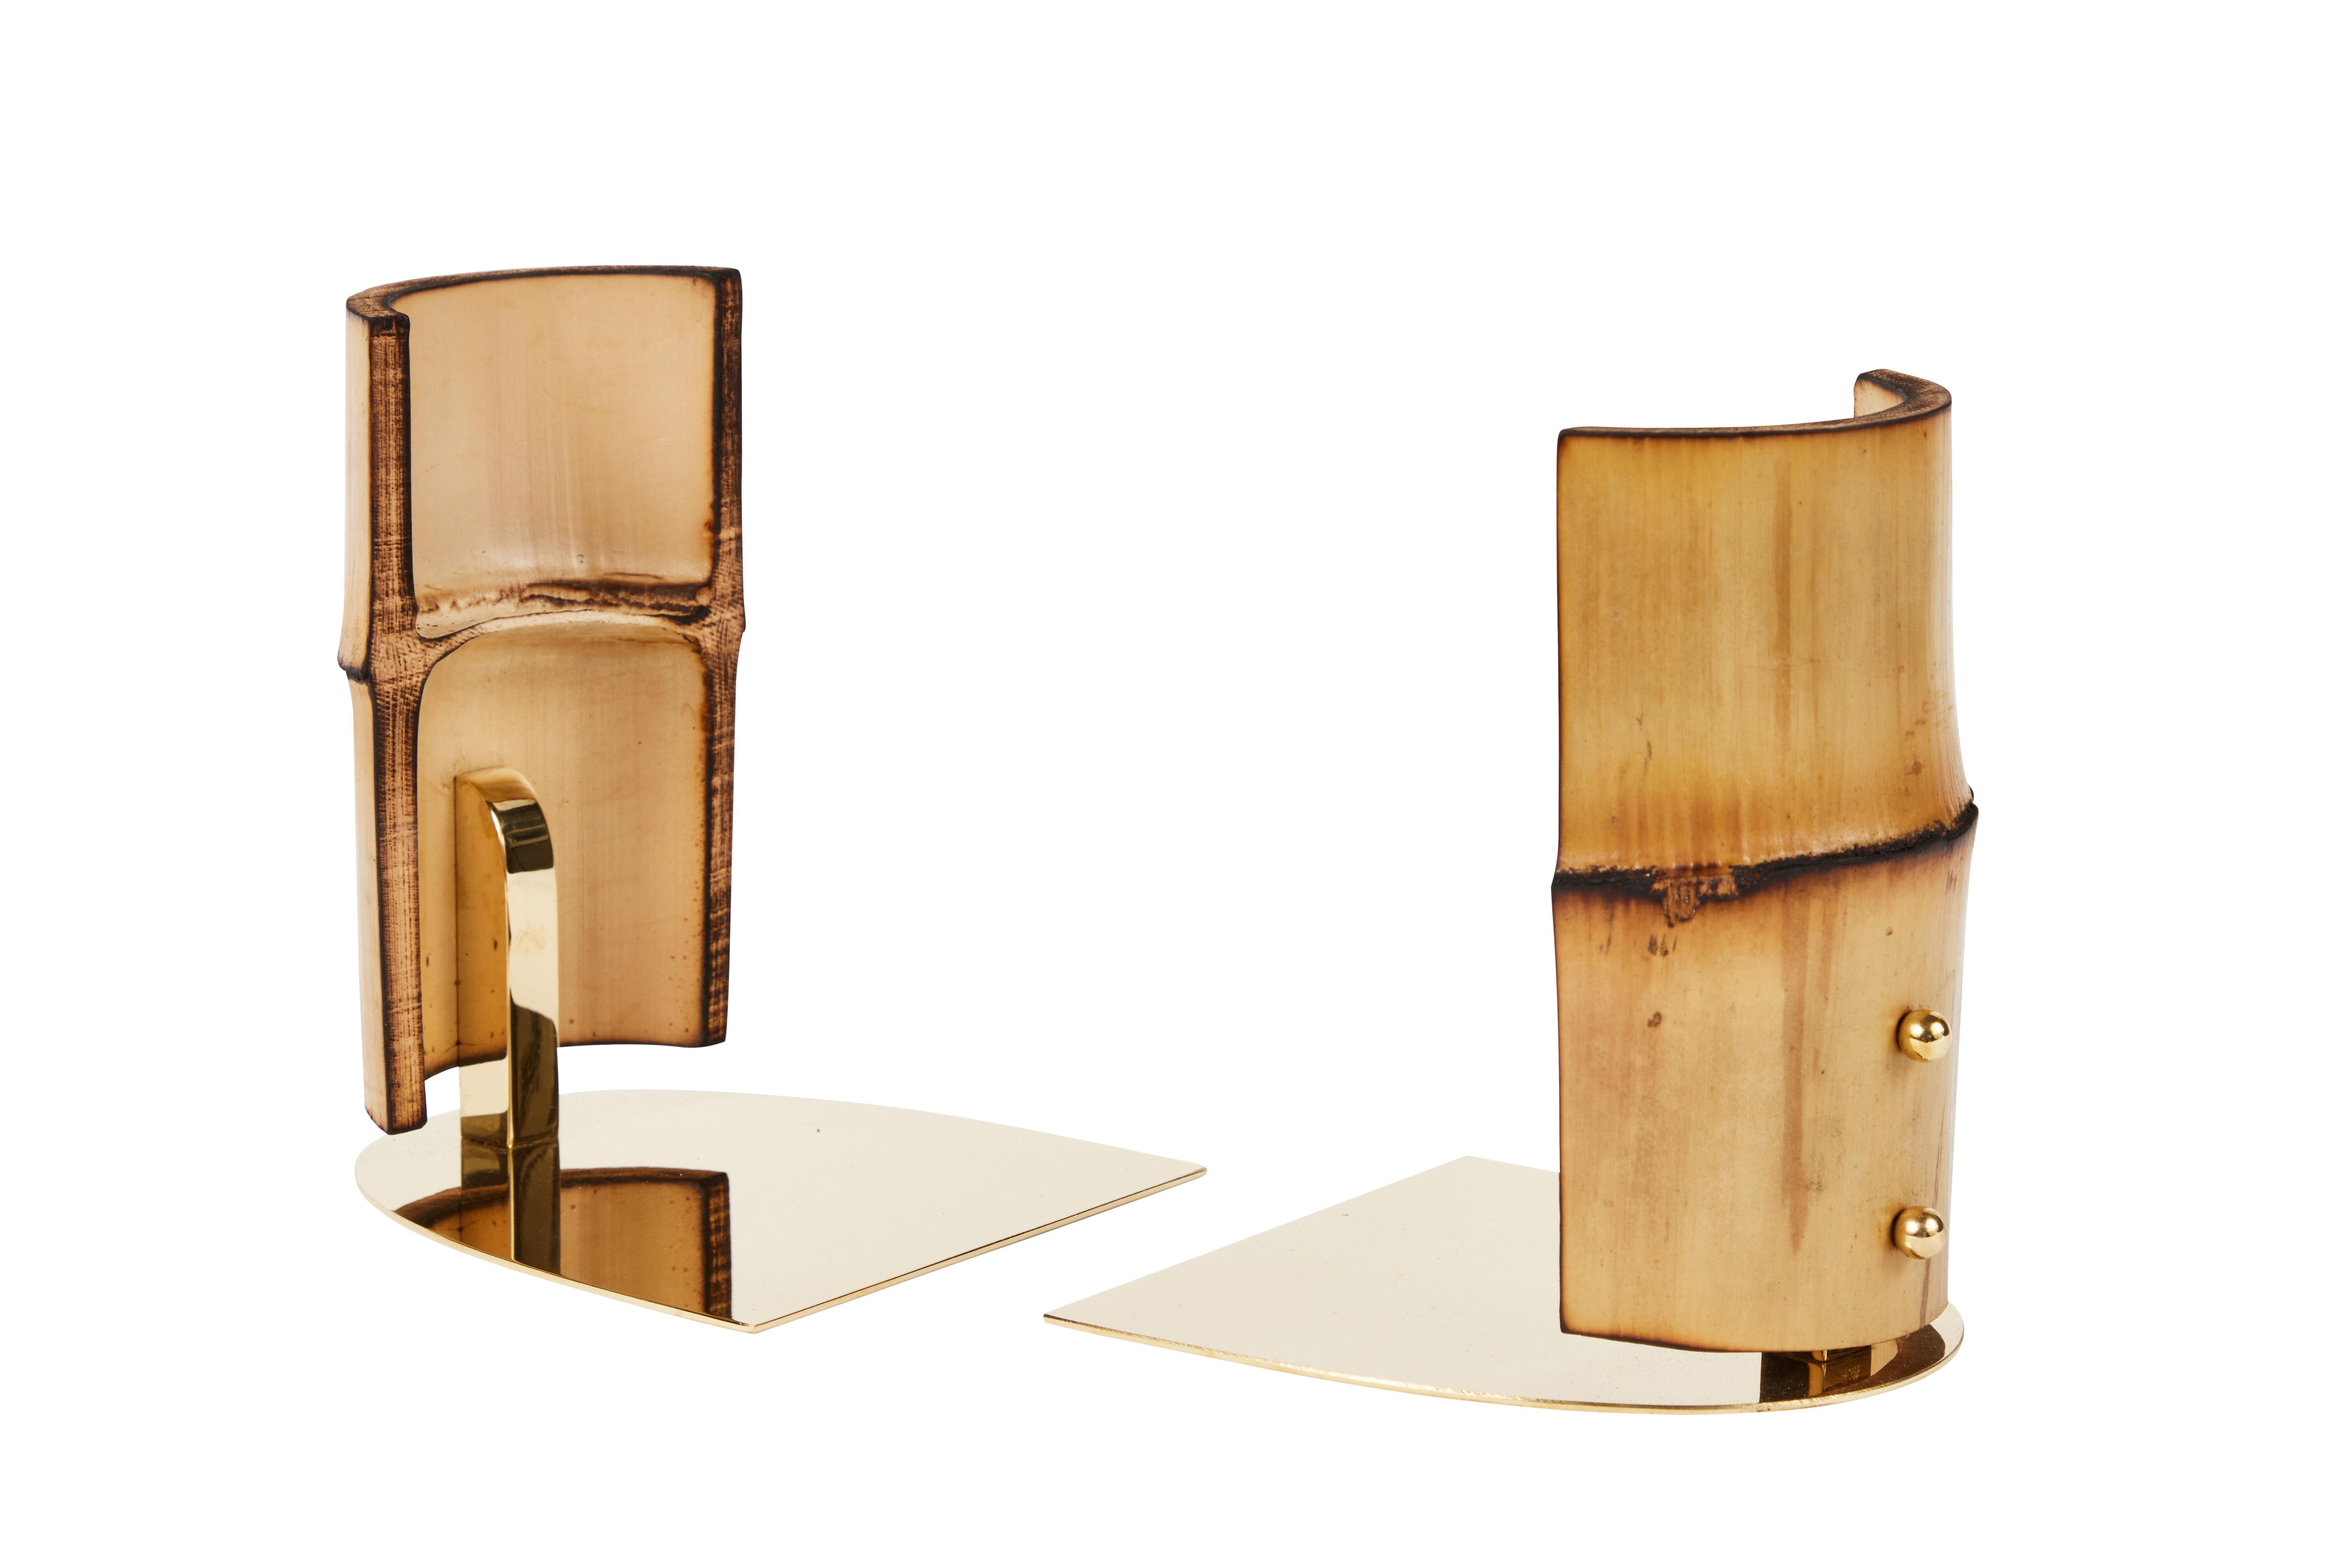 Paire de serre-livres Carl Auböck modèle #1937 'Bamboo'. Conçue dans les années 1950, cette paire de serre-livres incroyablement raffinée et sculpturale est exécutée en bambou et laiton coupés et polis à la main. 

Le prix correspond à la paire.